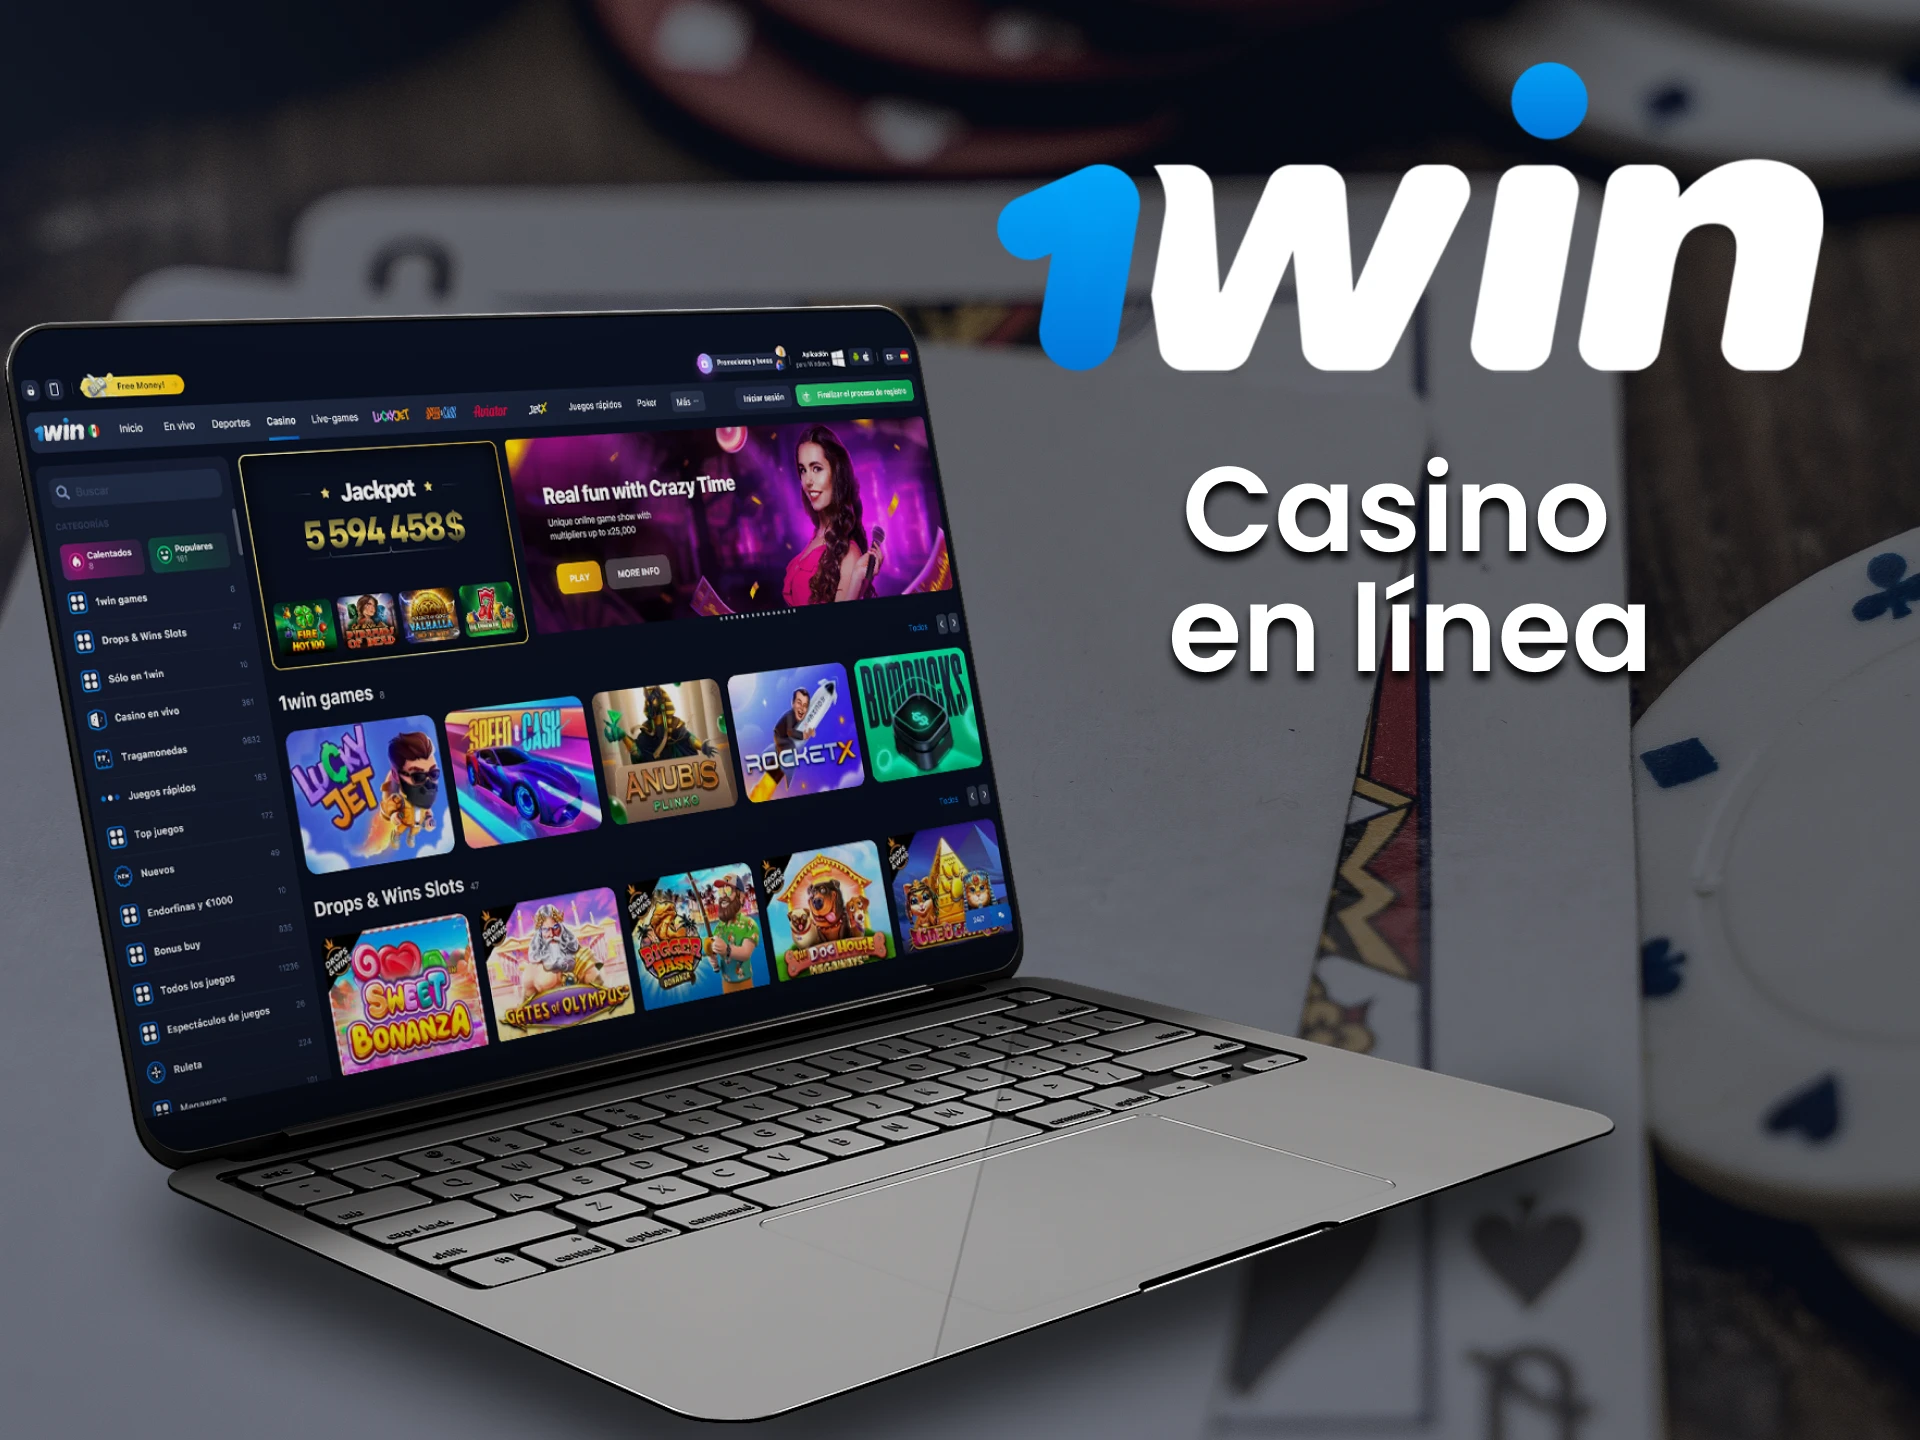 Hay muchos juegos de casino en línea en 1win.